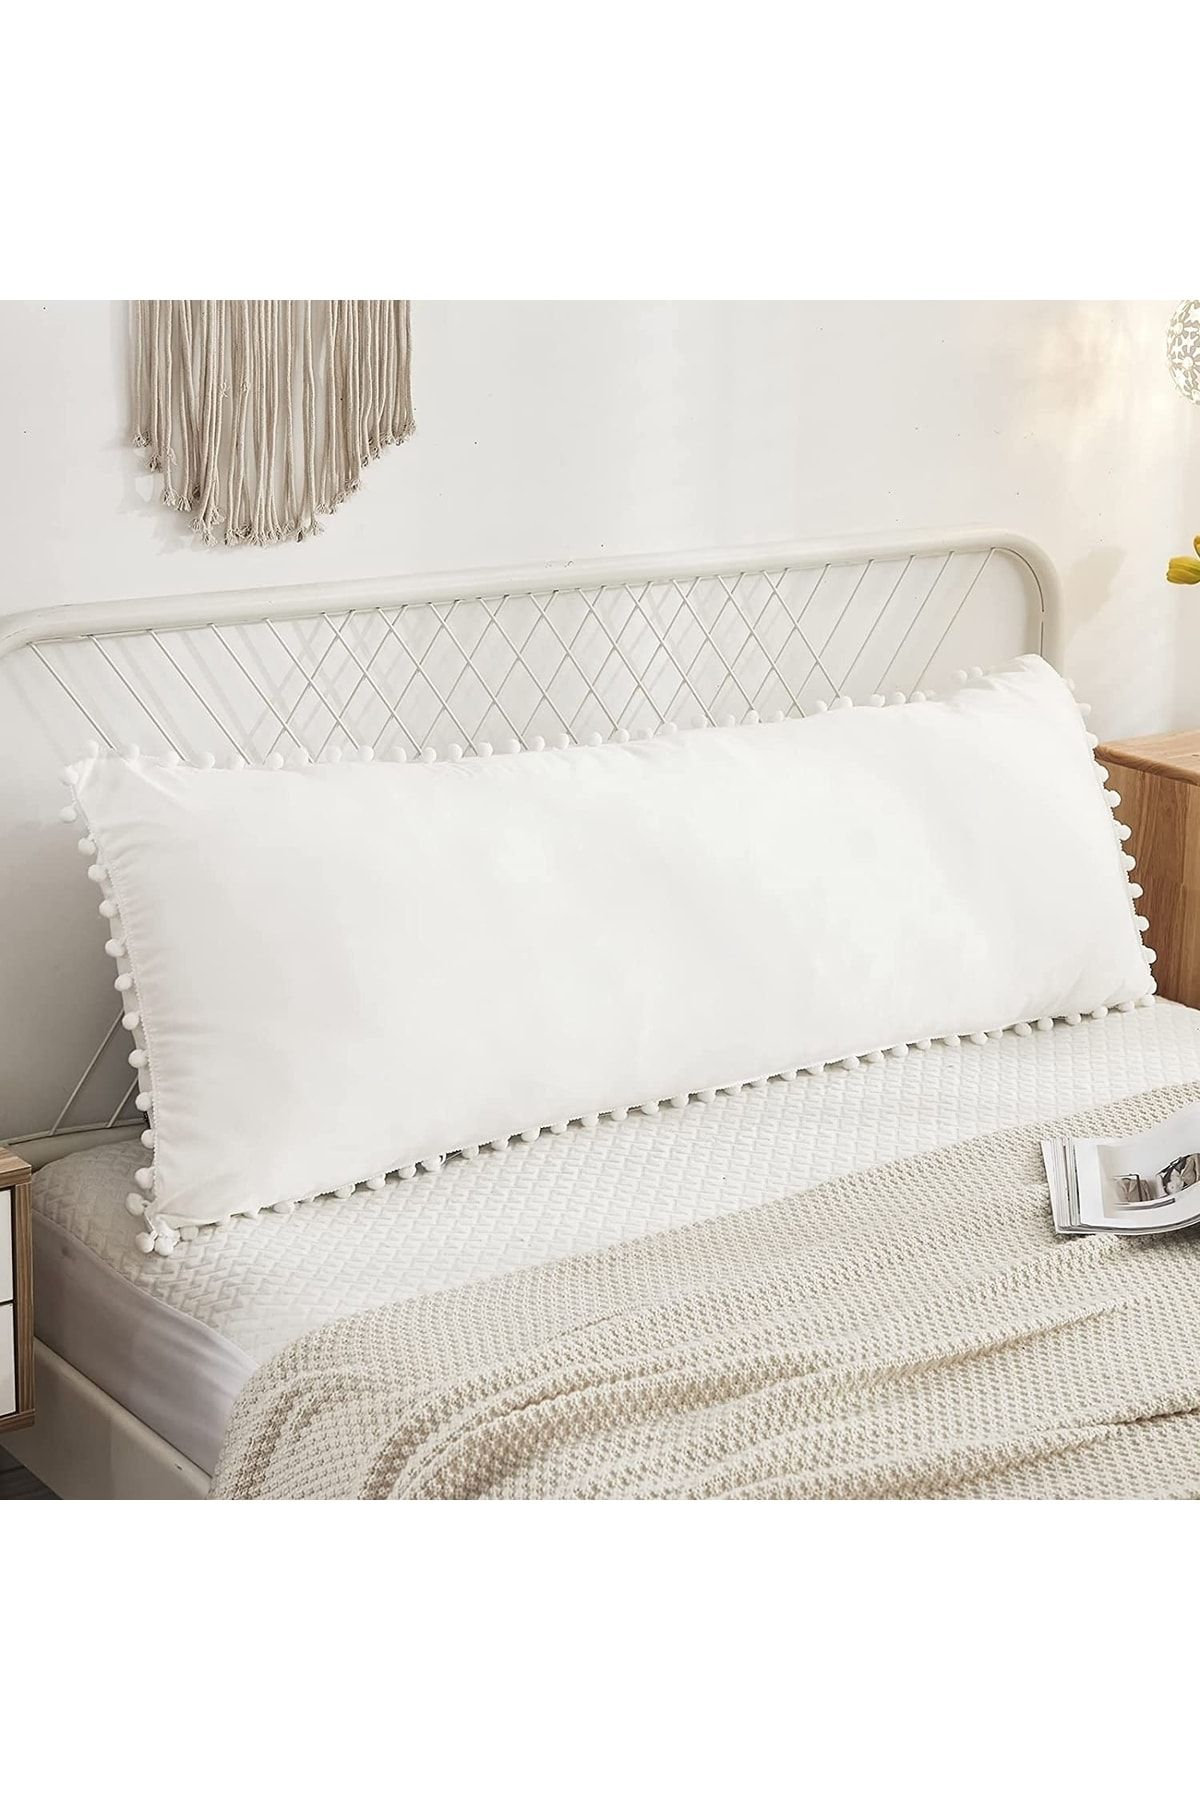 Tinybabyconcept Natural Pamuklu Beyaz Uzun Yastık Kılıfı Ponpon Kenarlı Decor Hamile Yastığı 50x135 Cm